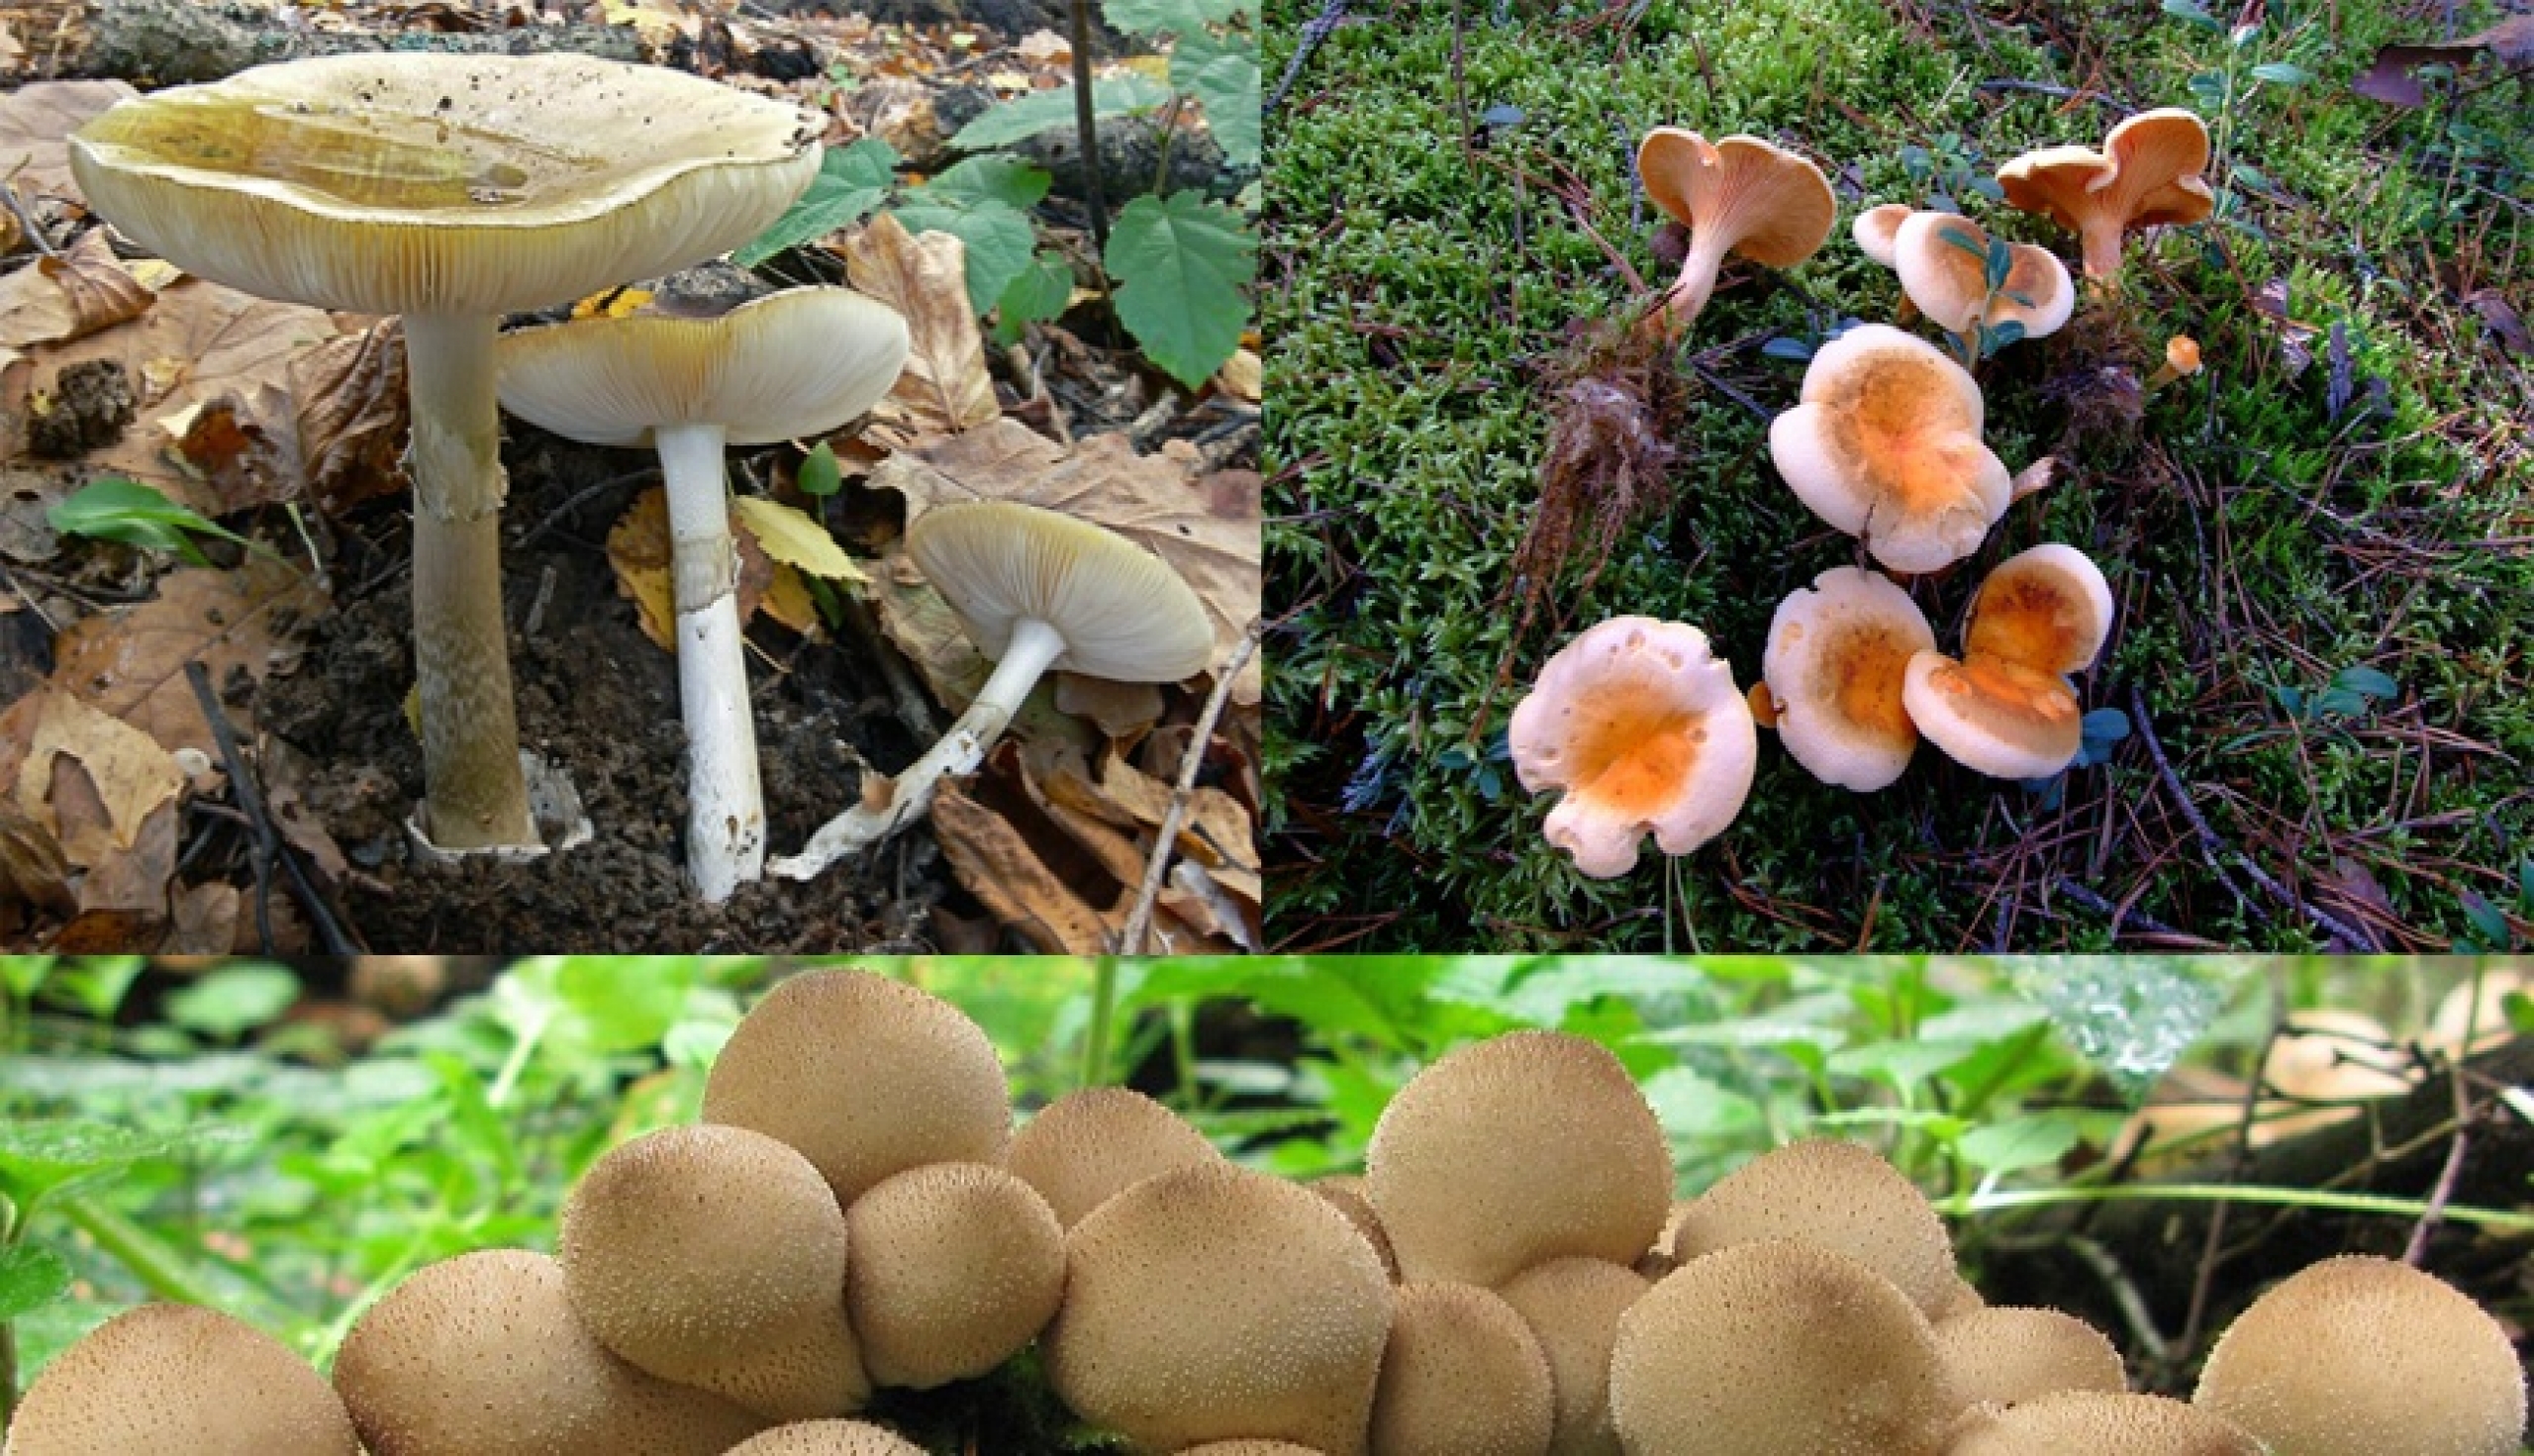 Как распознать ядовитые грибы в лесу и на кухне